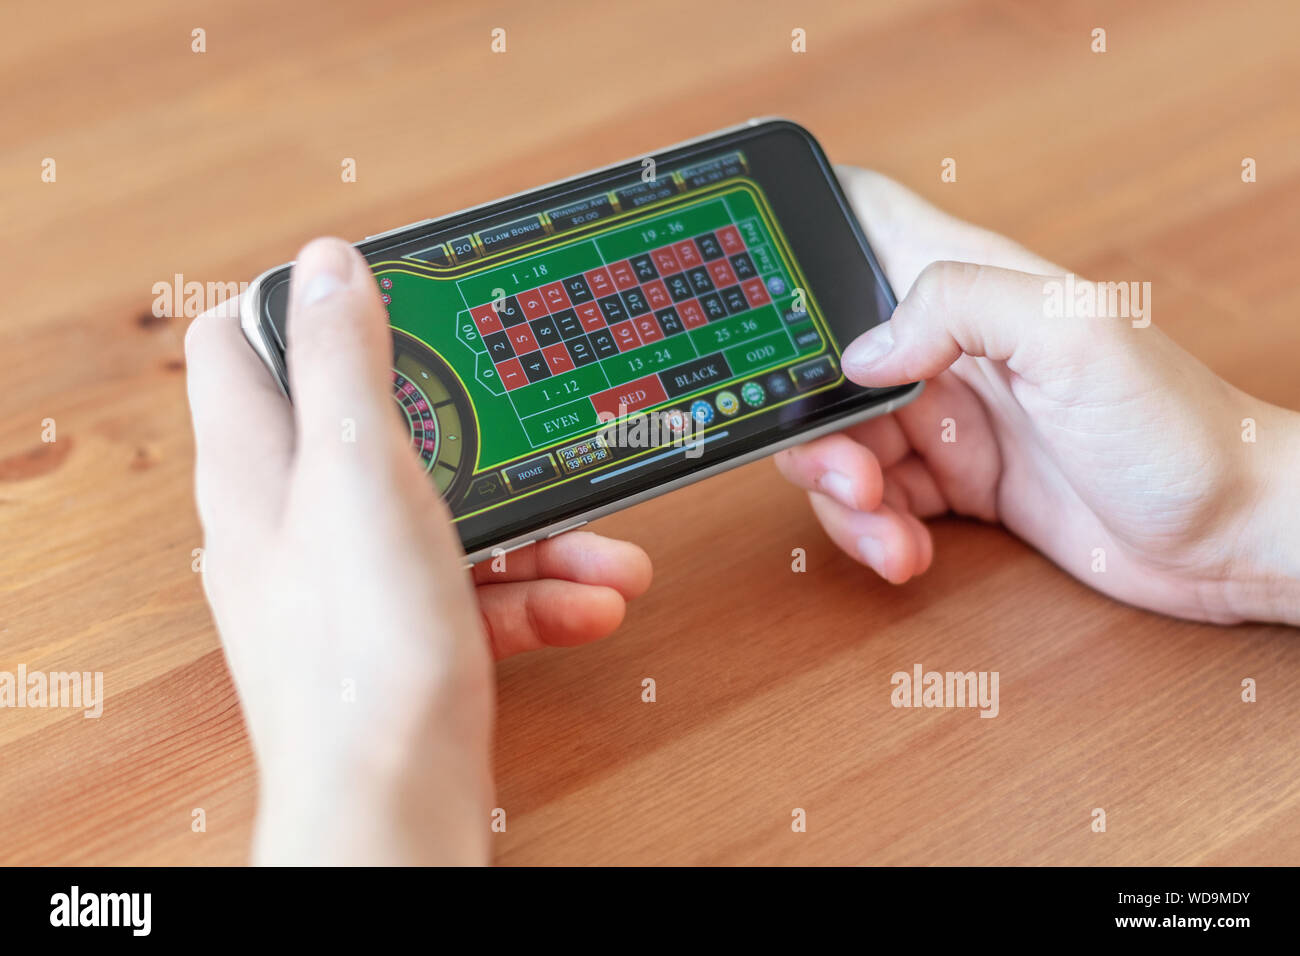 London / UK, 24 agosto 2019 - Primo piano delle mani il gioco d'azzardo sul telefono mobile device, con una profondità di campo ridotta. Foto Stock